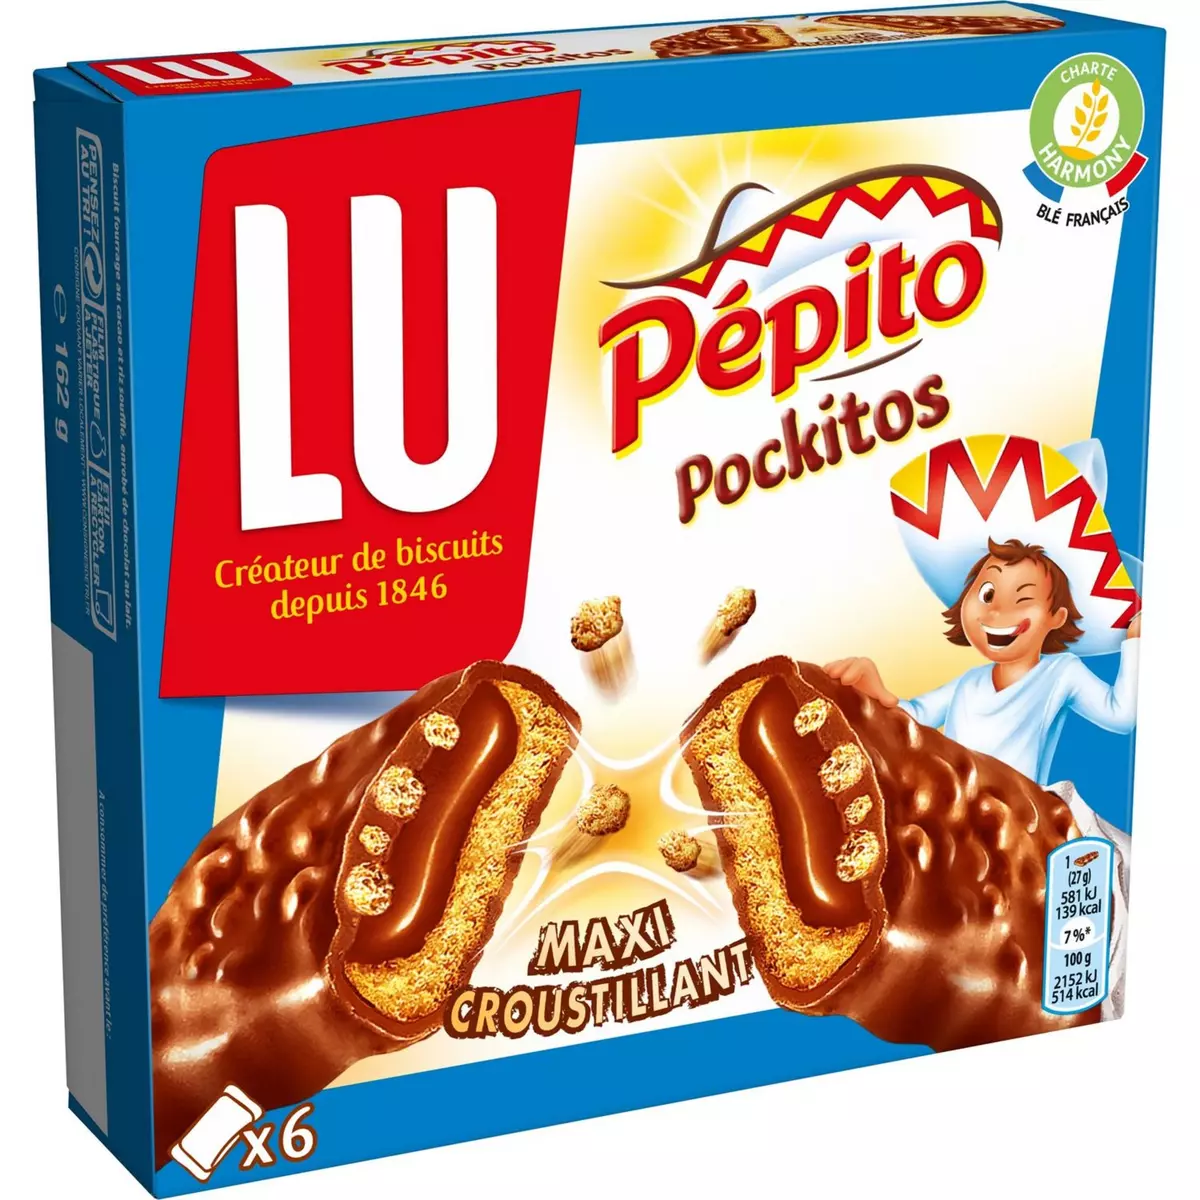 Pépito Pockitos de Lu : avis et tests - Biscuits - Gâteaux - Pépito  Pockitos de Lu : avis et tests - Biscuits - Gâteaux